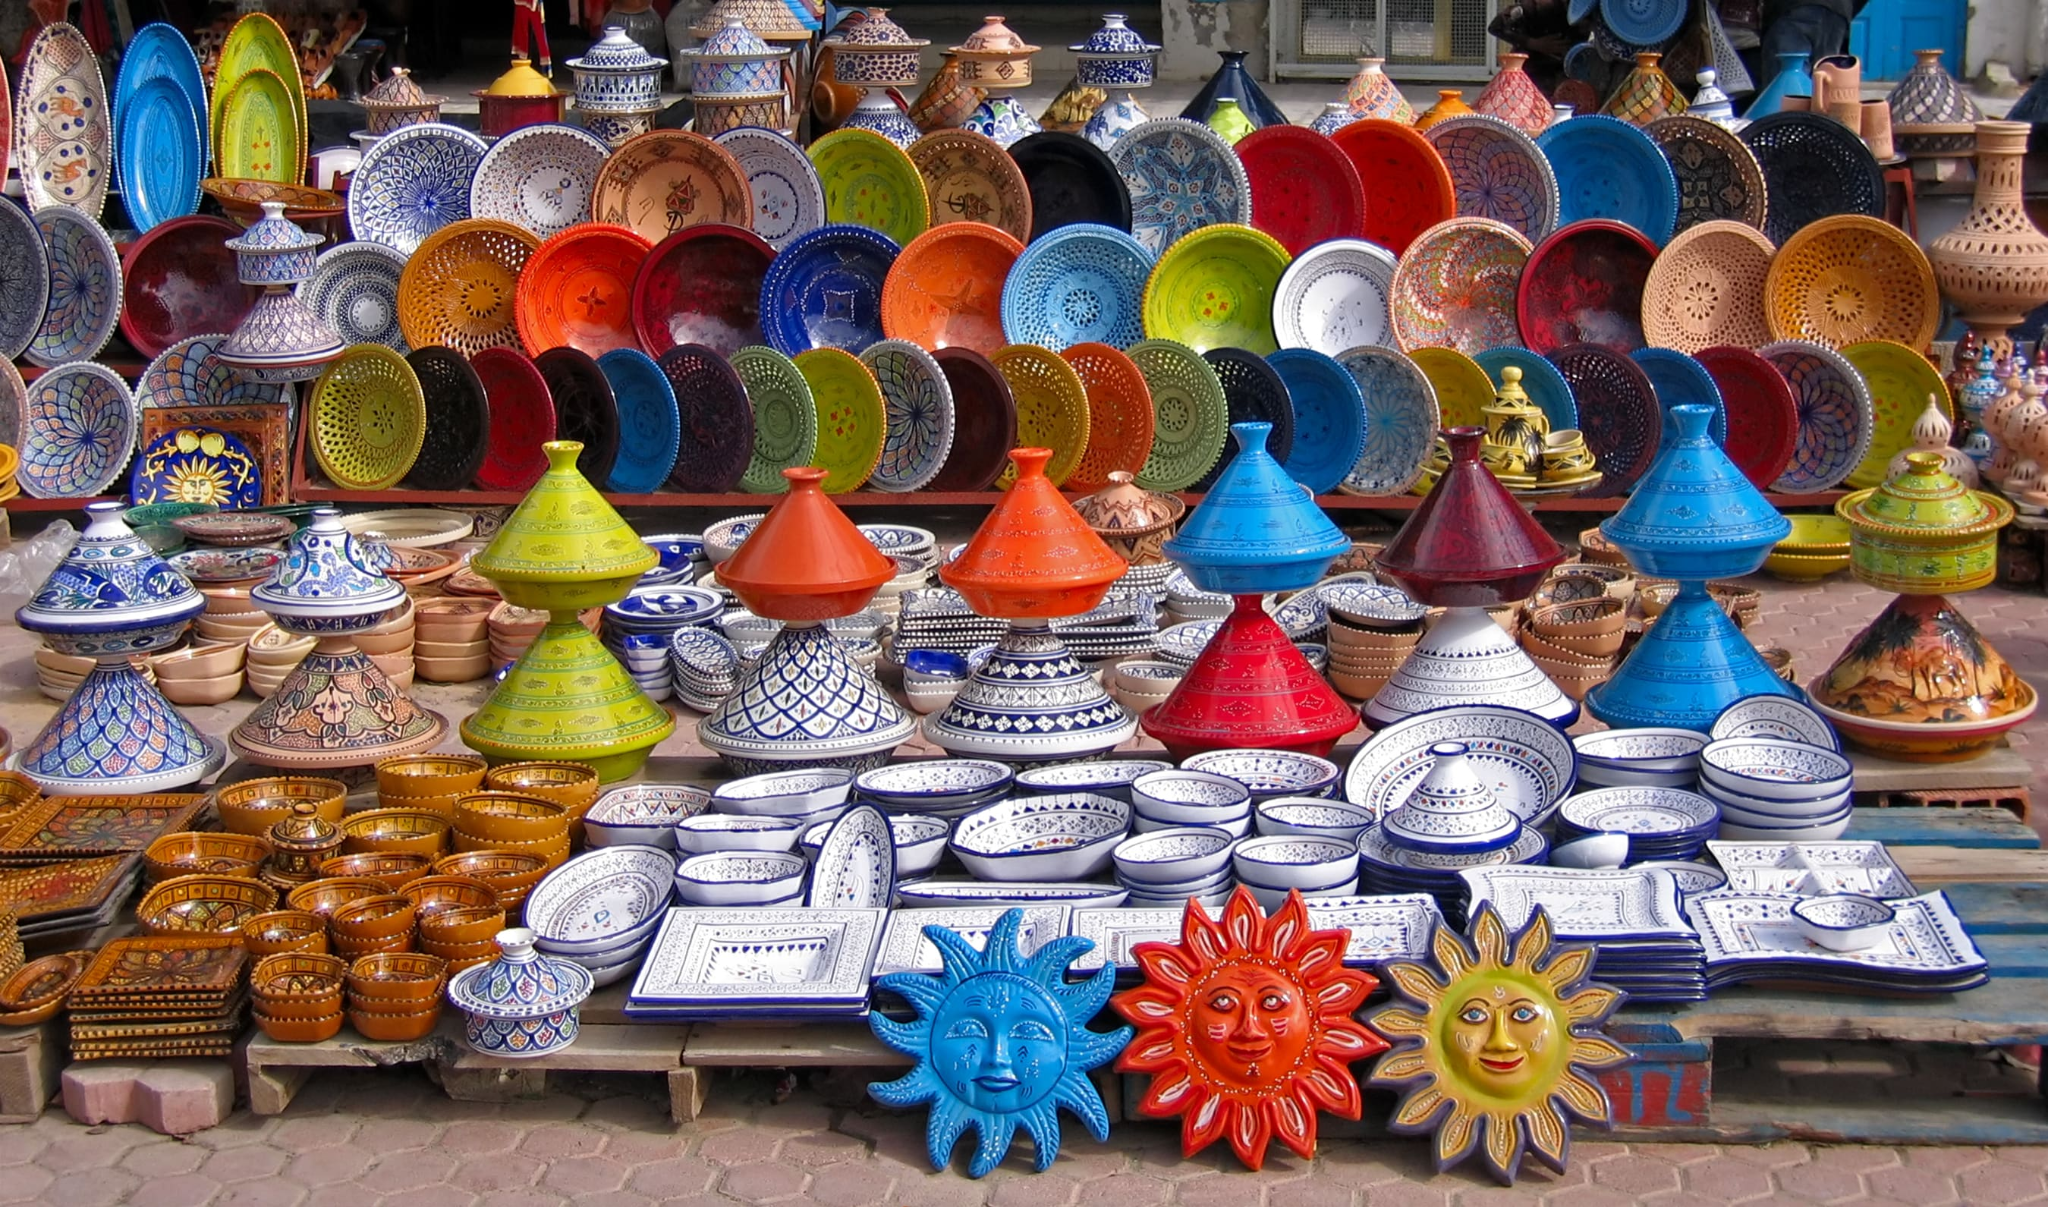 Kishanpole-bazaar